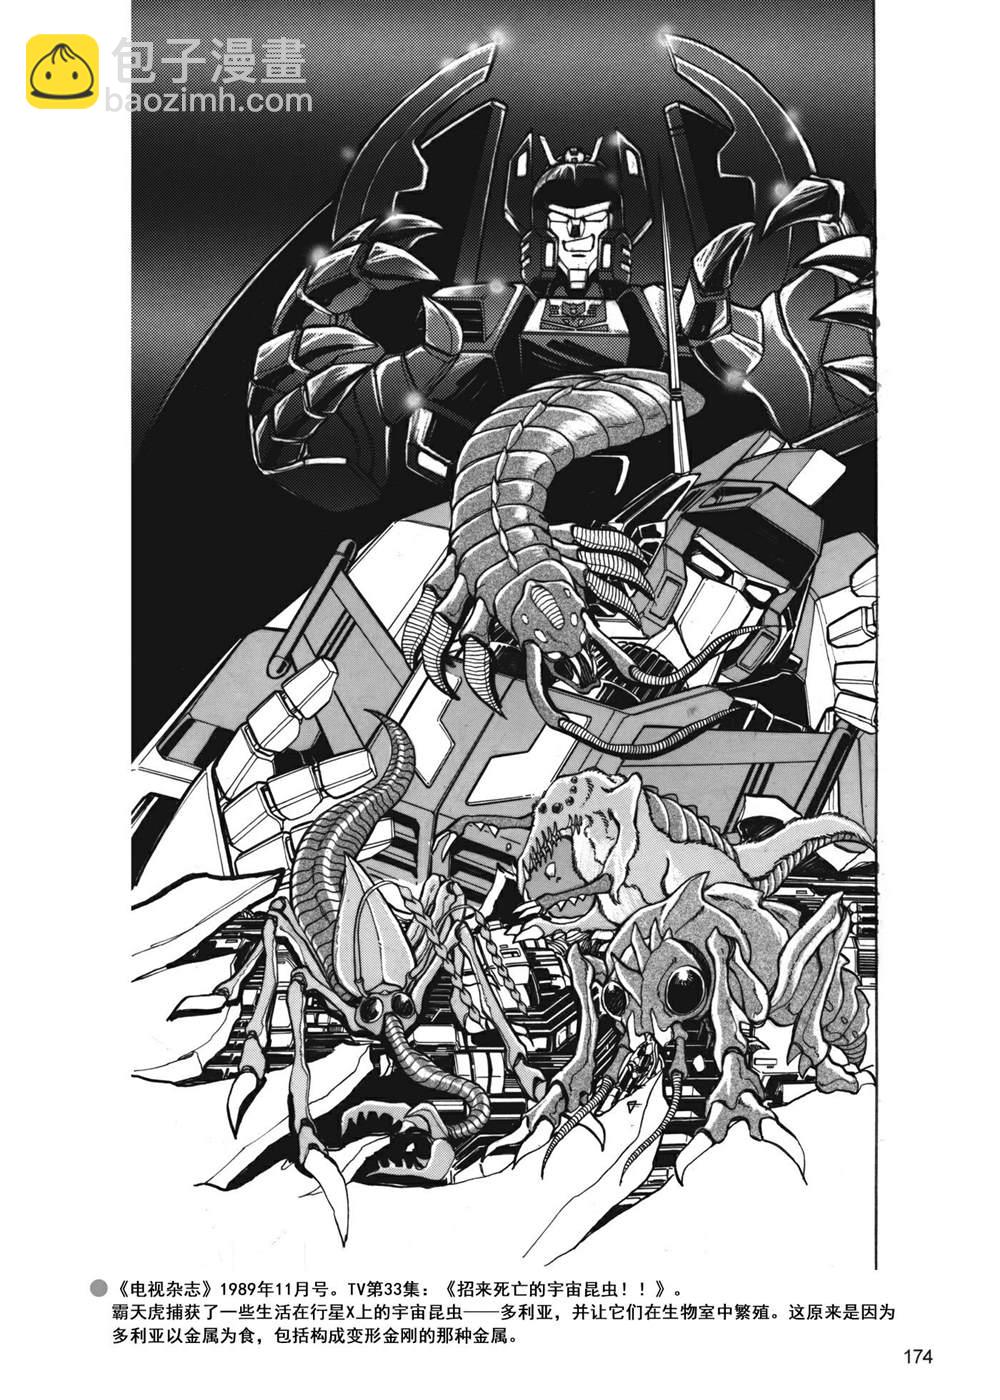 变形金刚日版G1杂志插画 - 战斗吧！超机械生命体变形金刚：胜利之斗争 - 7